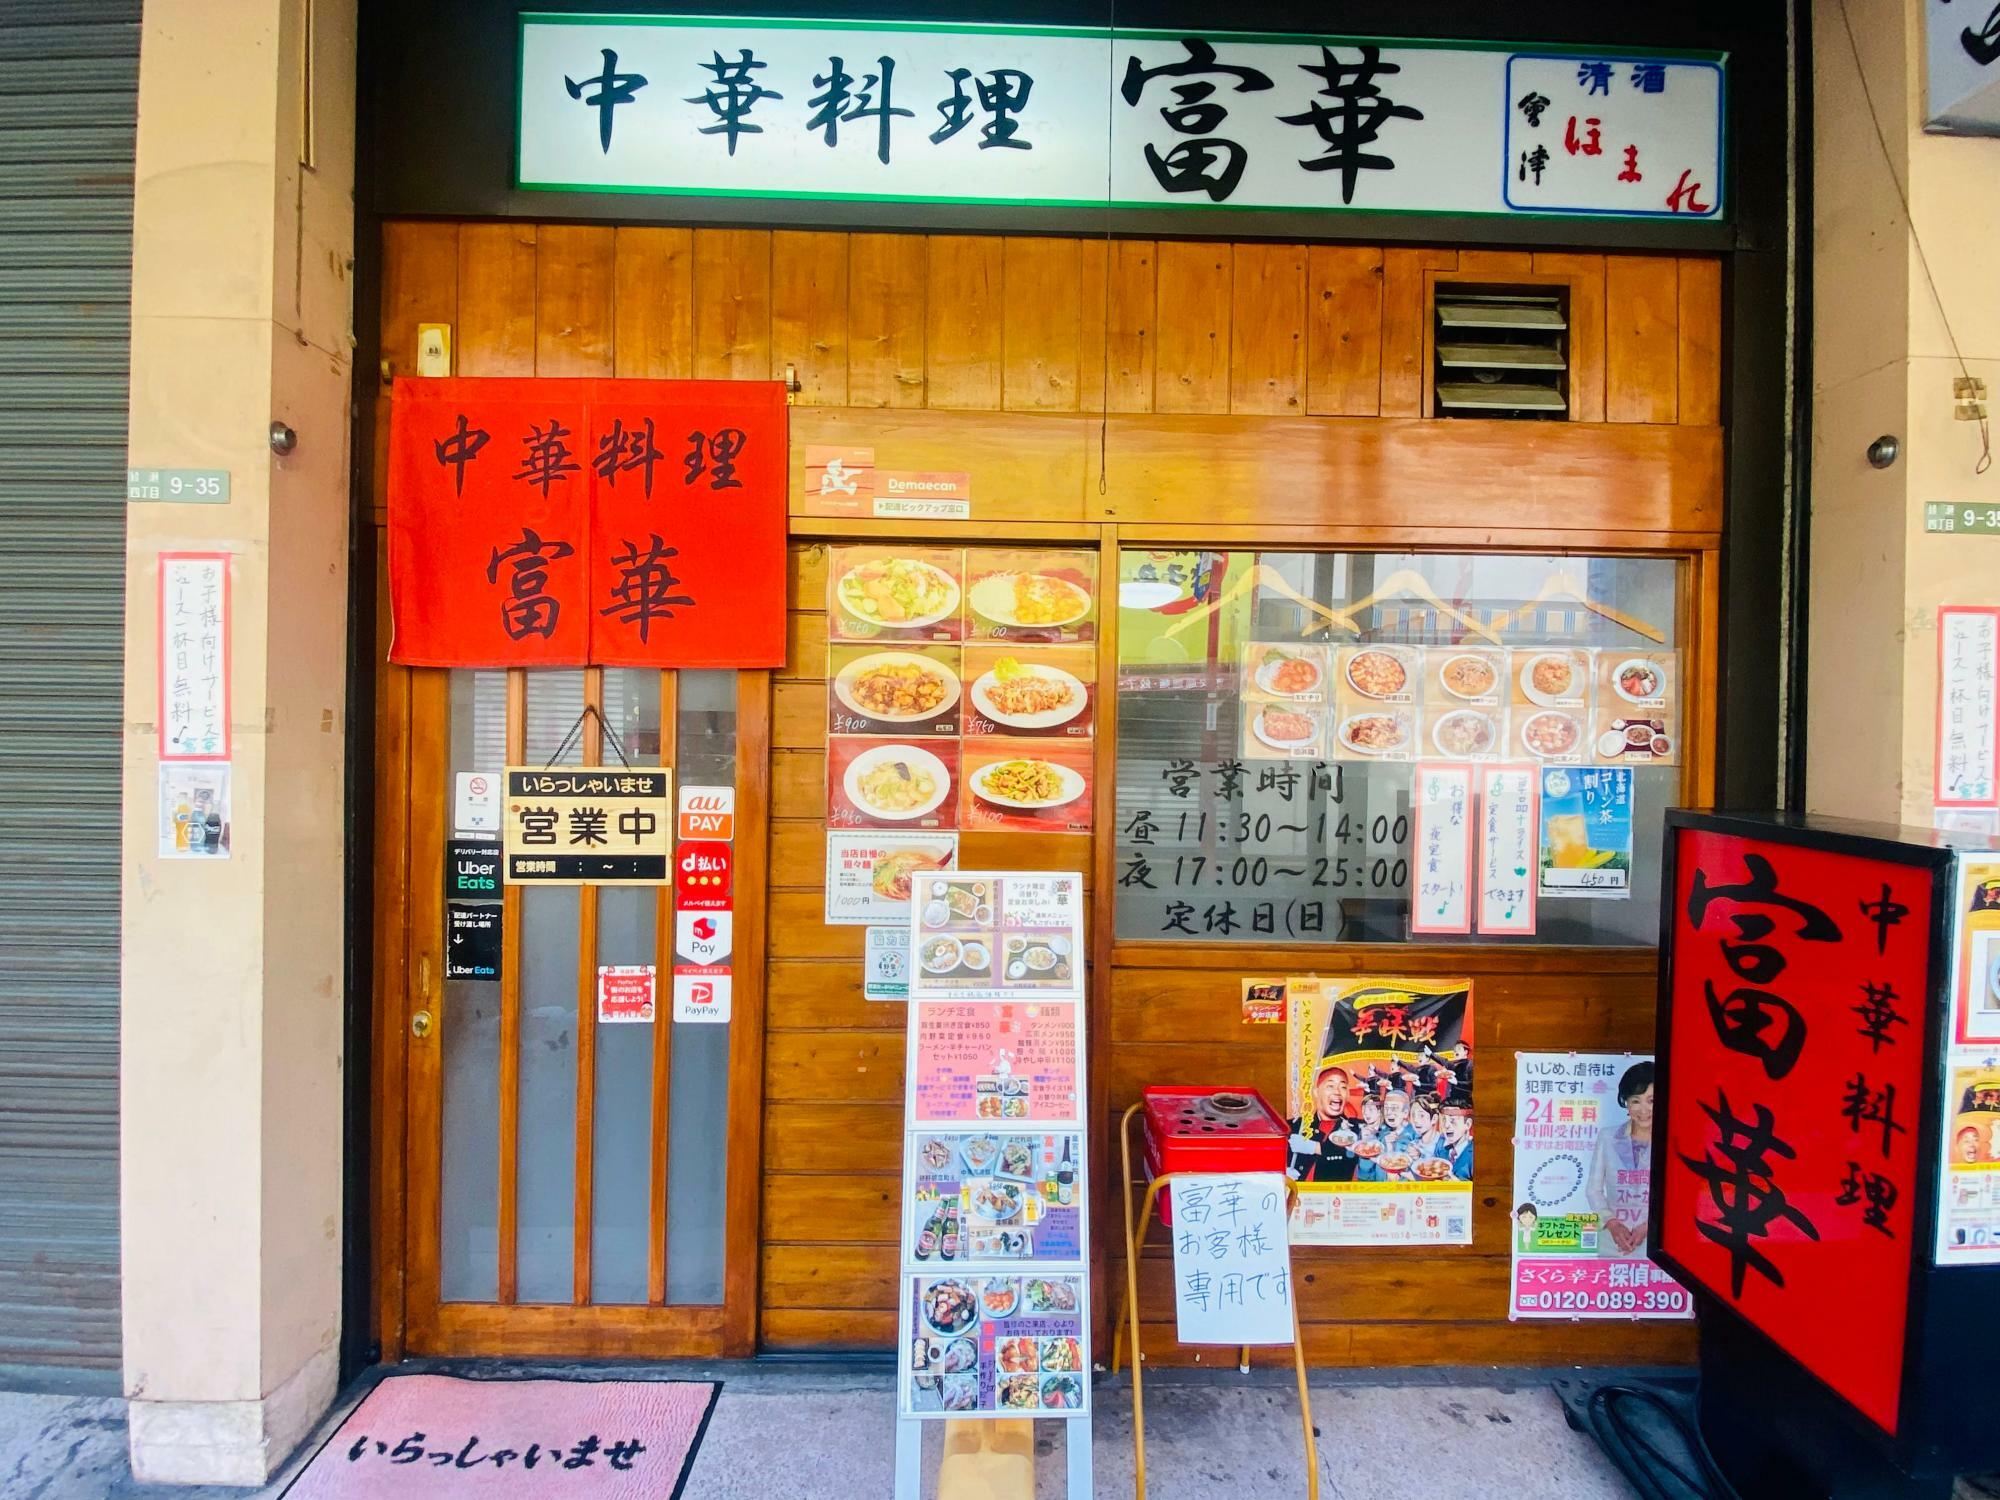 綾瀬駅からすぐの場所にある「中華料理 富華」 